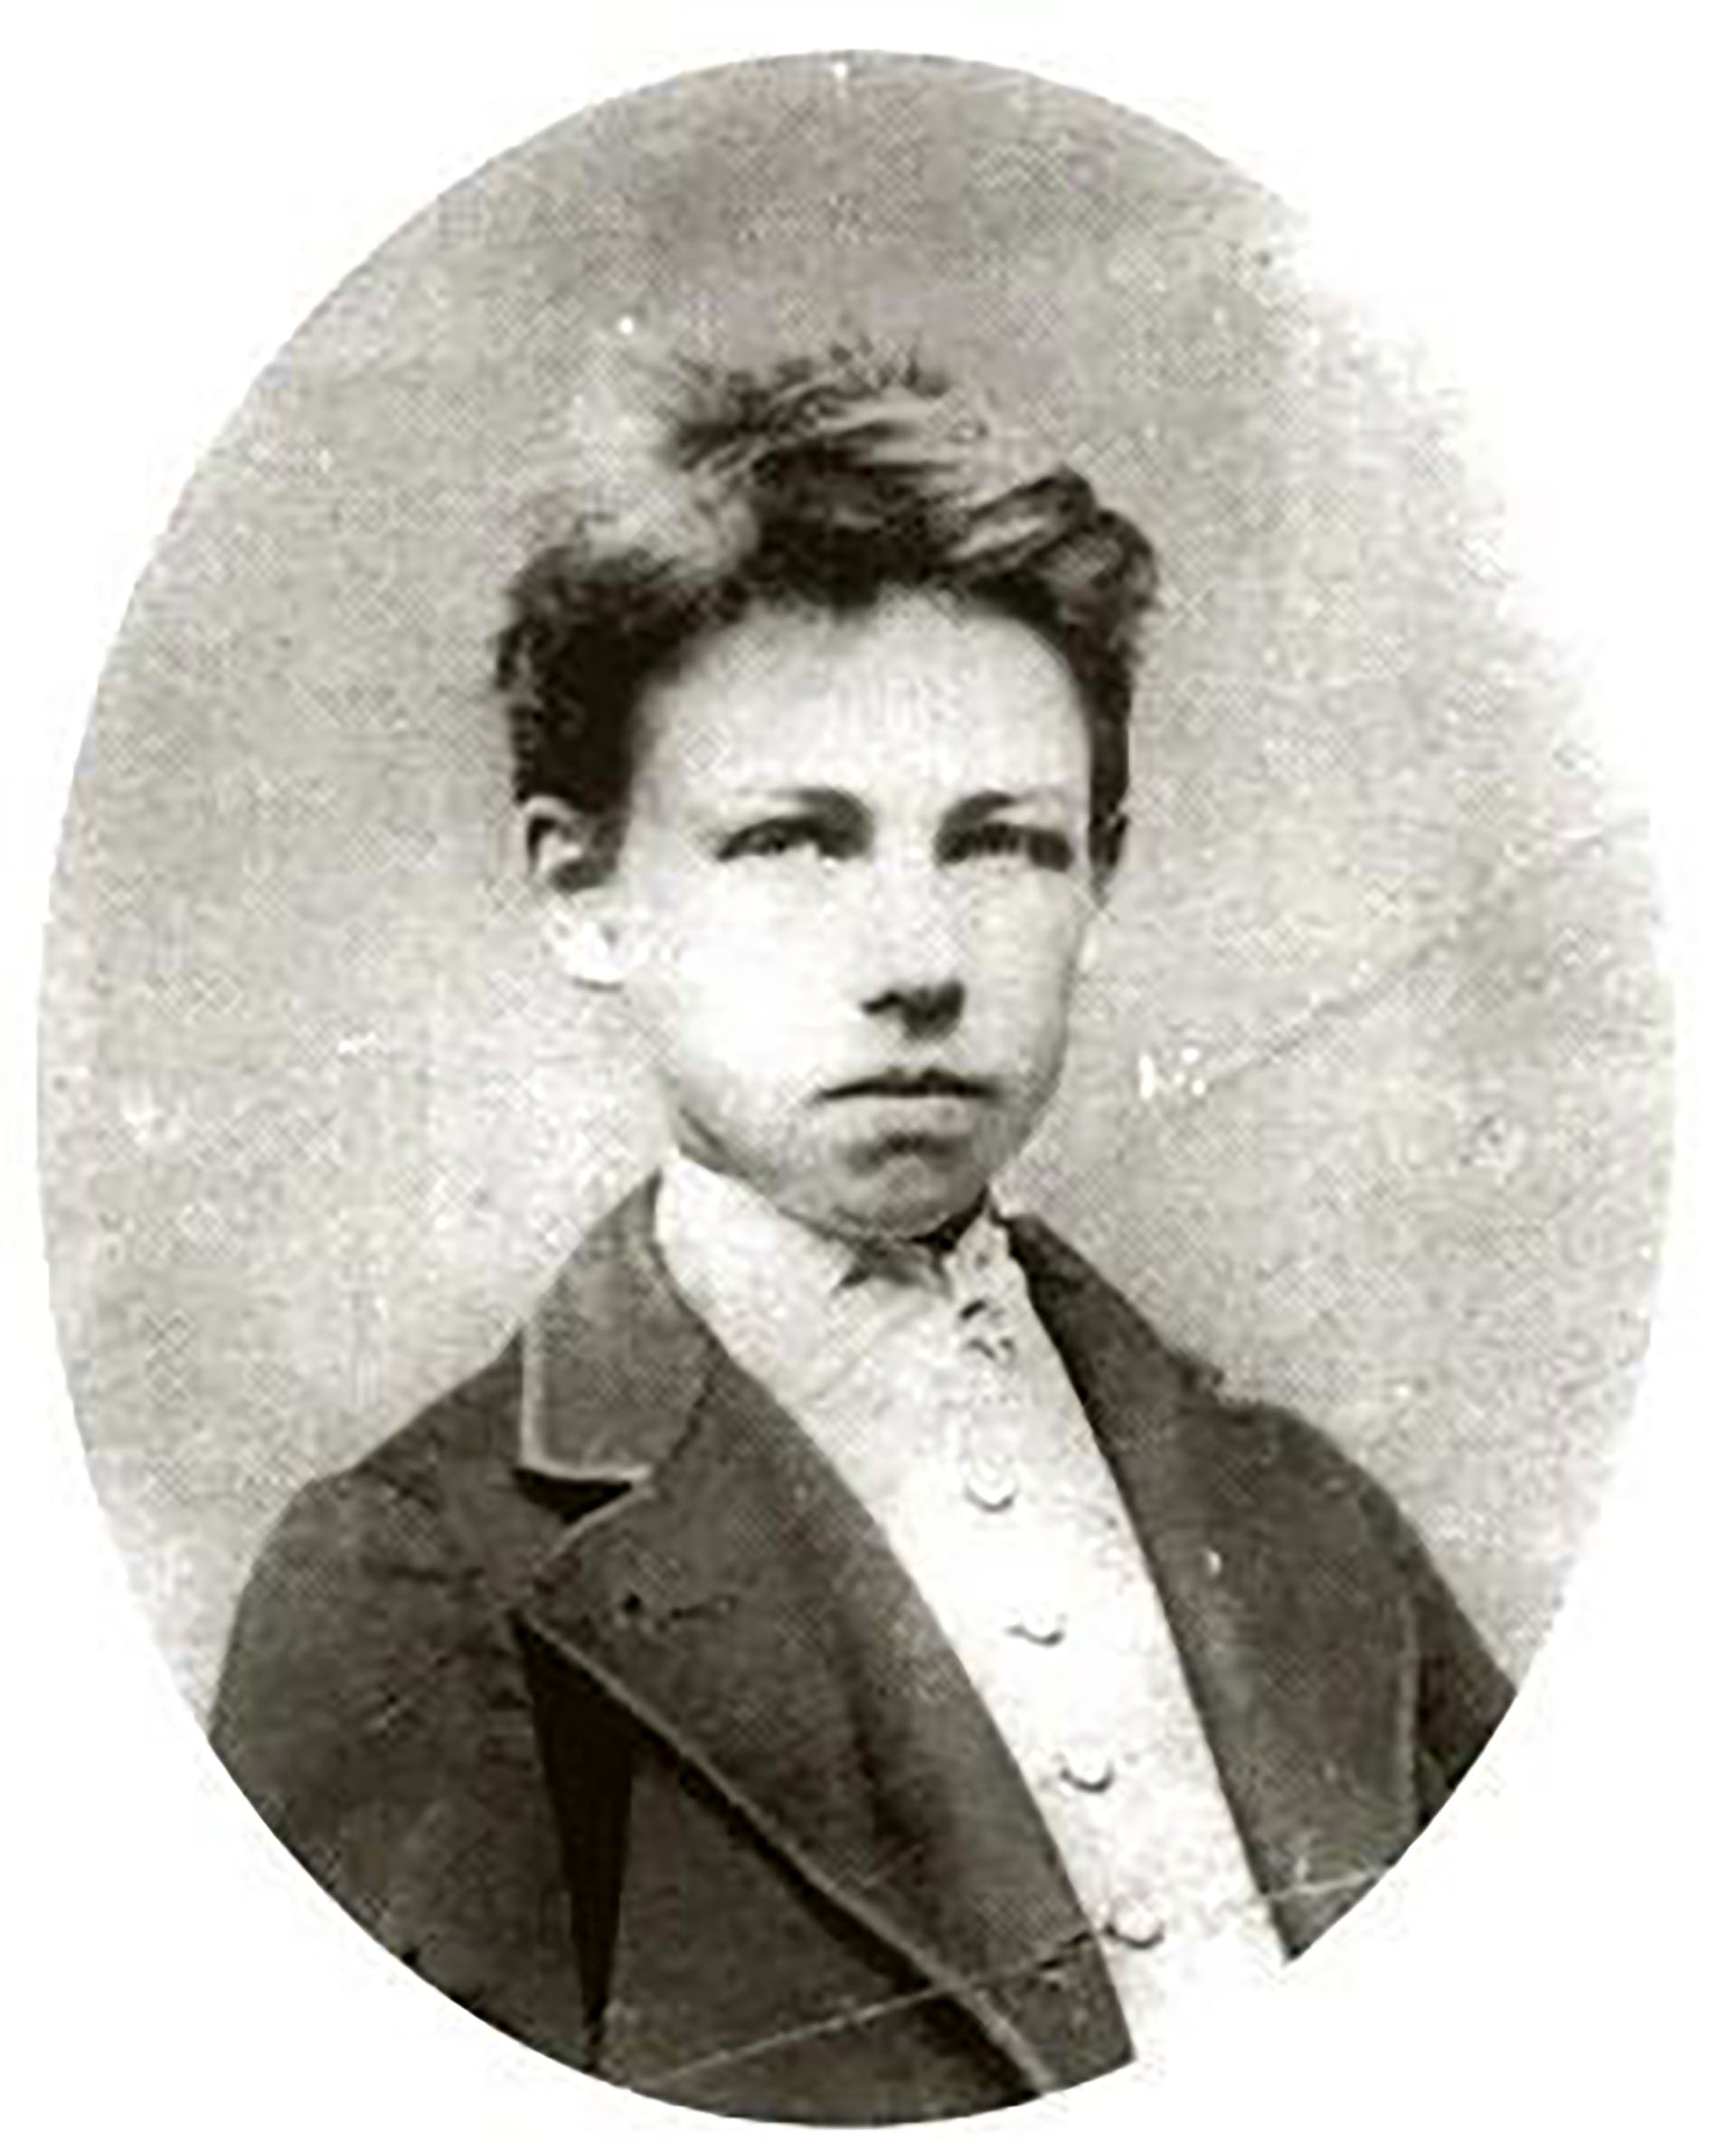 Étienne Carjat, “Arthur Rimbaud”, 1871. Positivo sobre vidrio para impresión de copias.